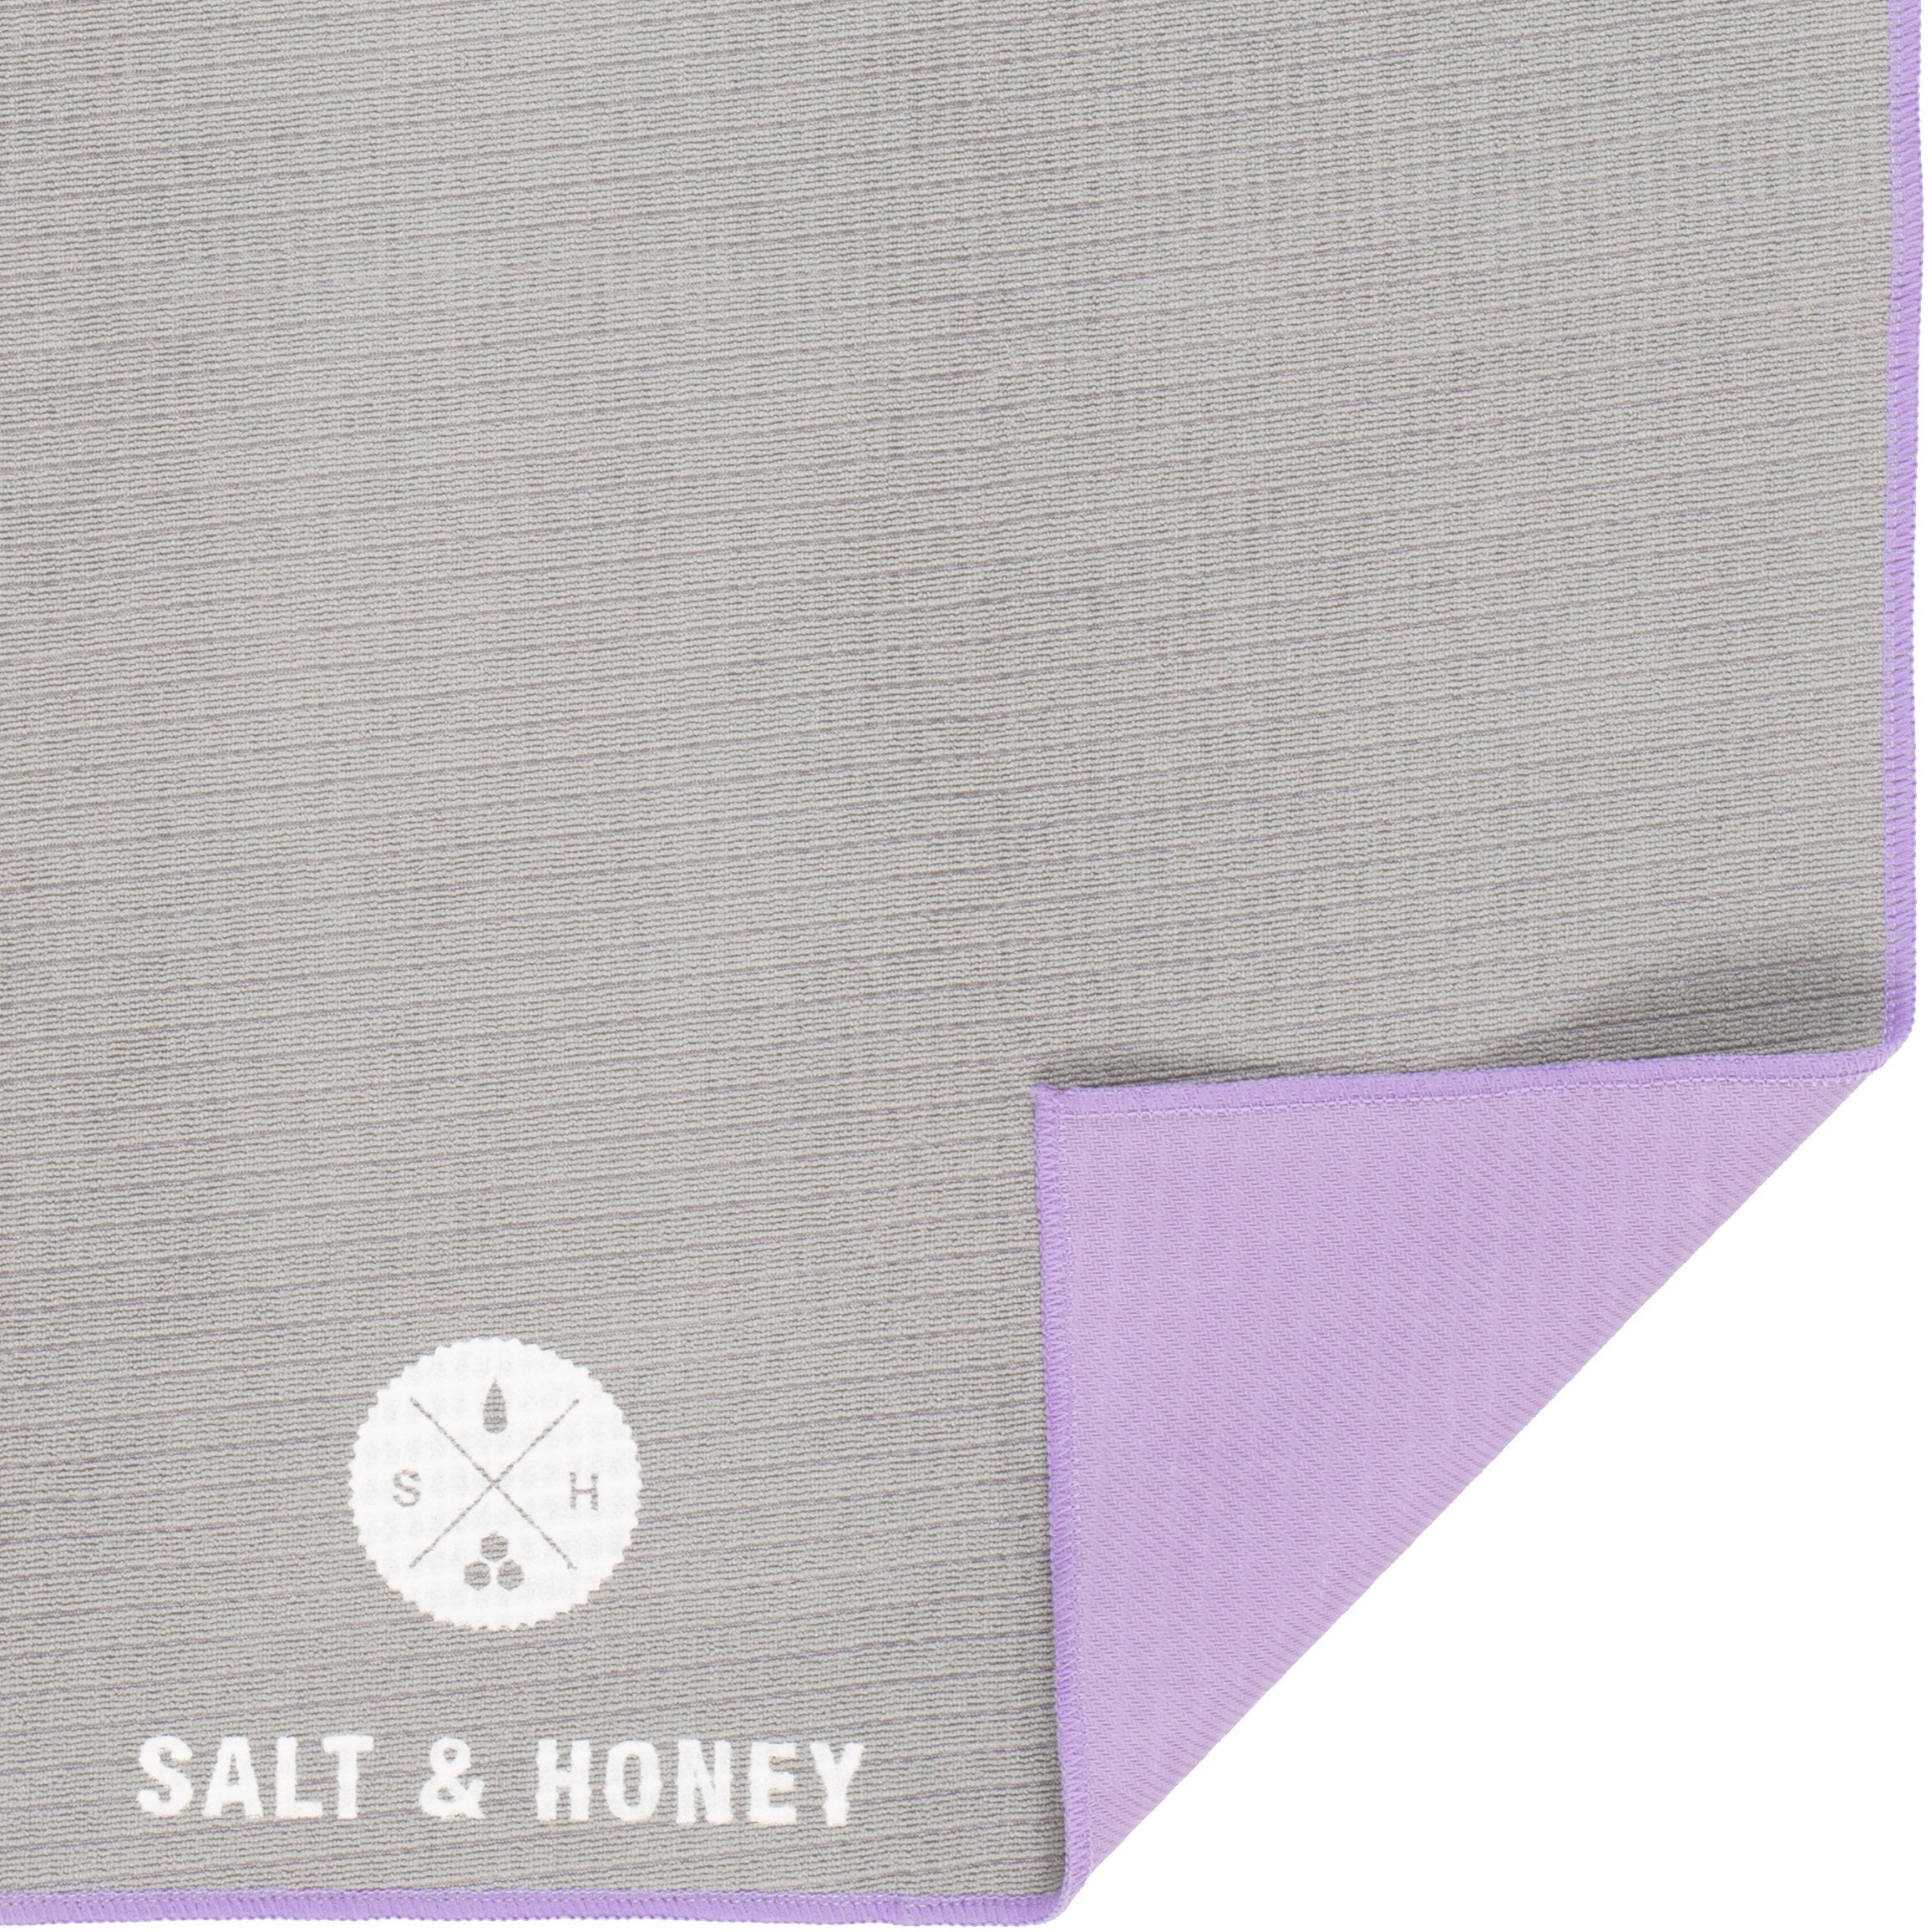 Non-Slip Pilates Reformer Towel - Buy 2 Save 15% – Salt & Honey